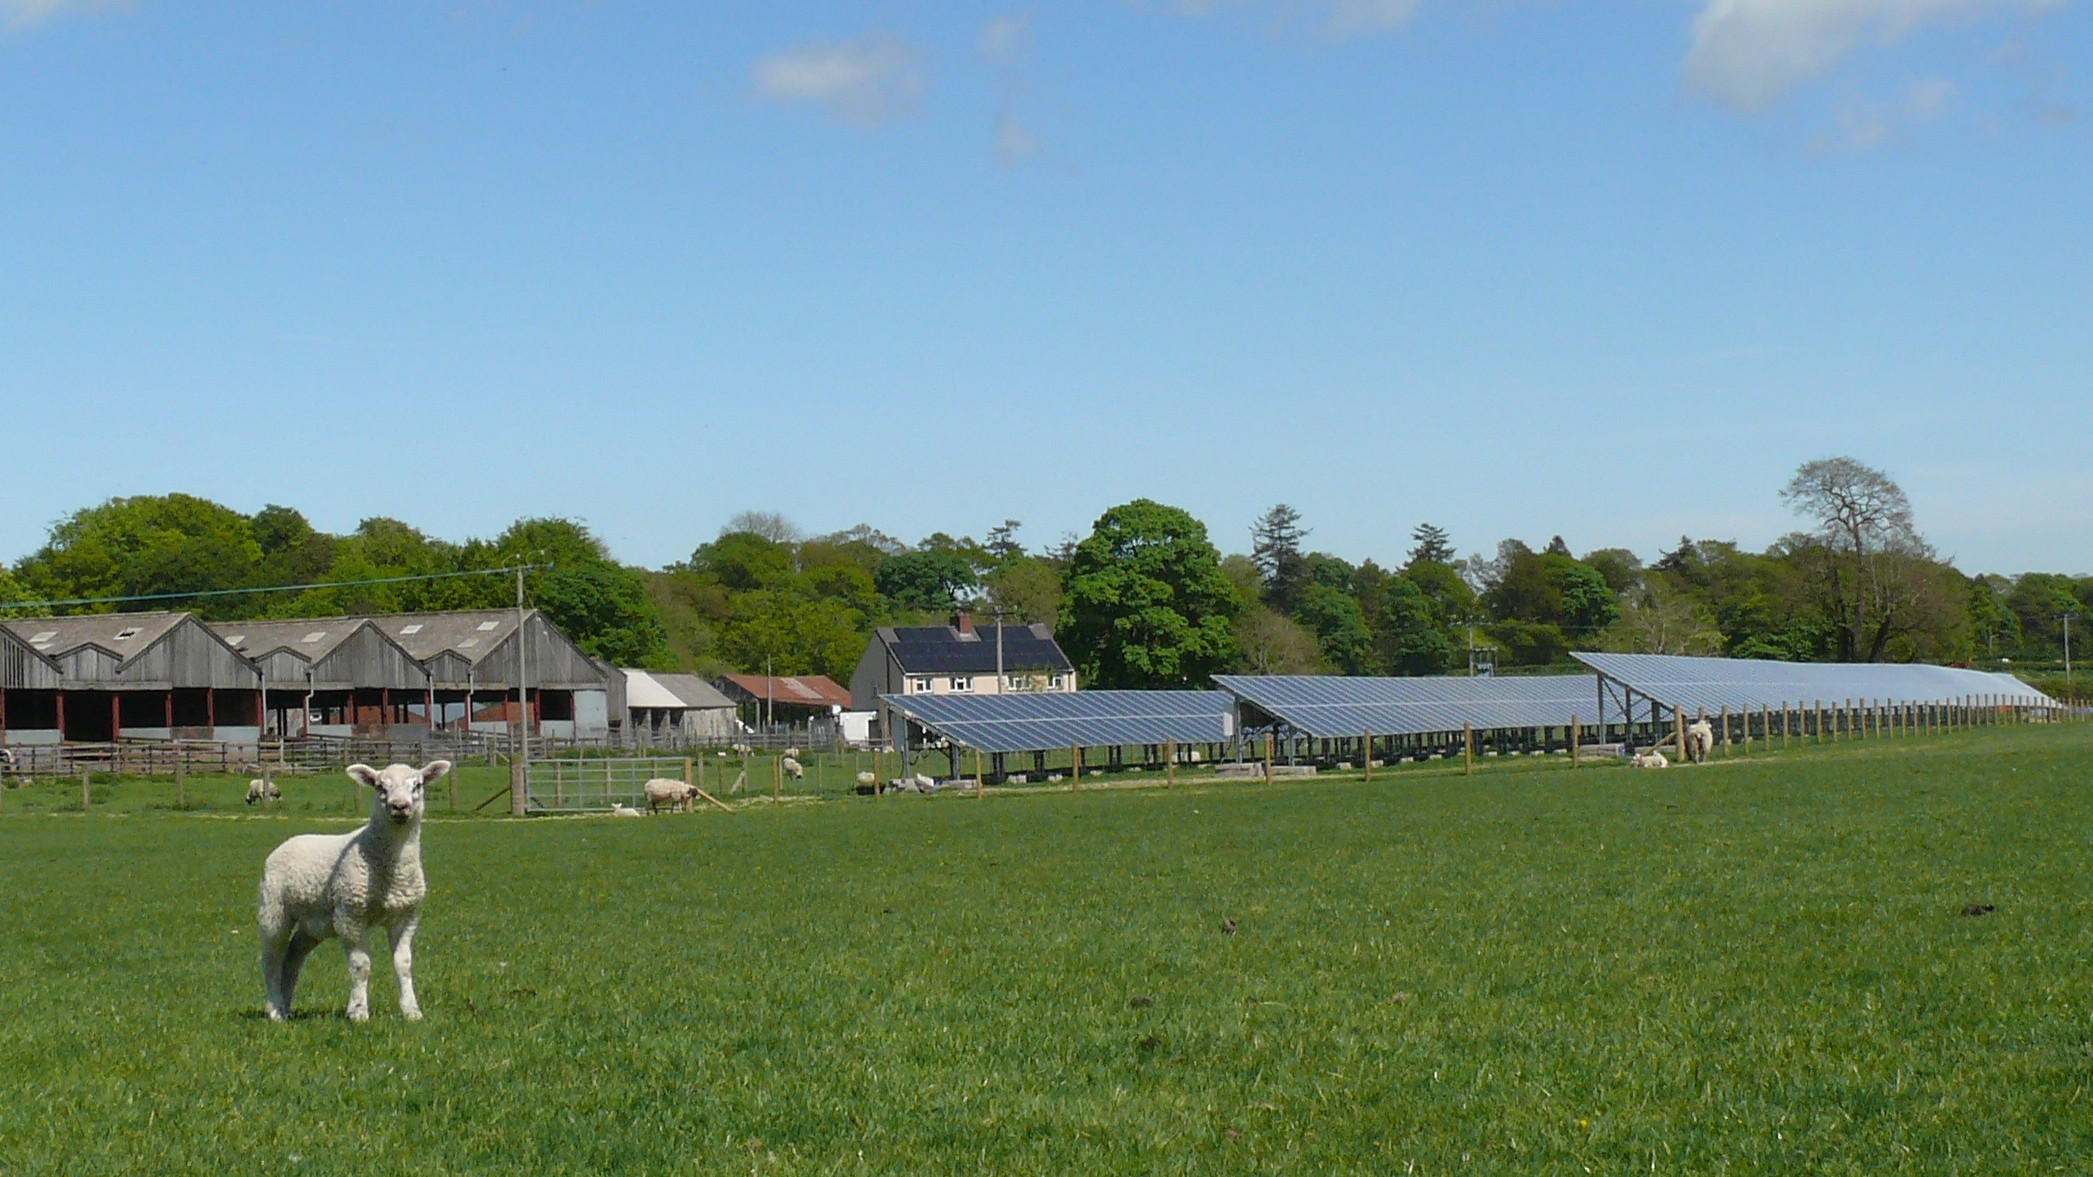 Solpaneler er med til at forsyne The Rhug Estate med vedvarende energi, og den overskydende energi sendes videre ud i elnettet, så andre kan bruge det